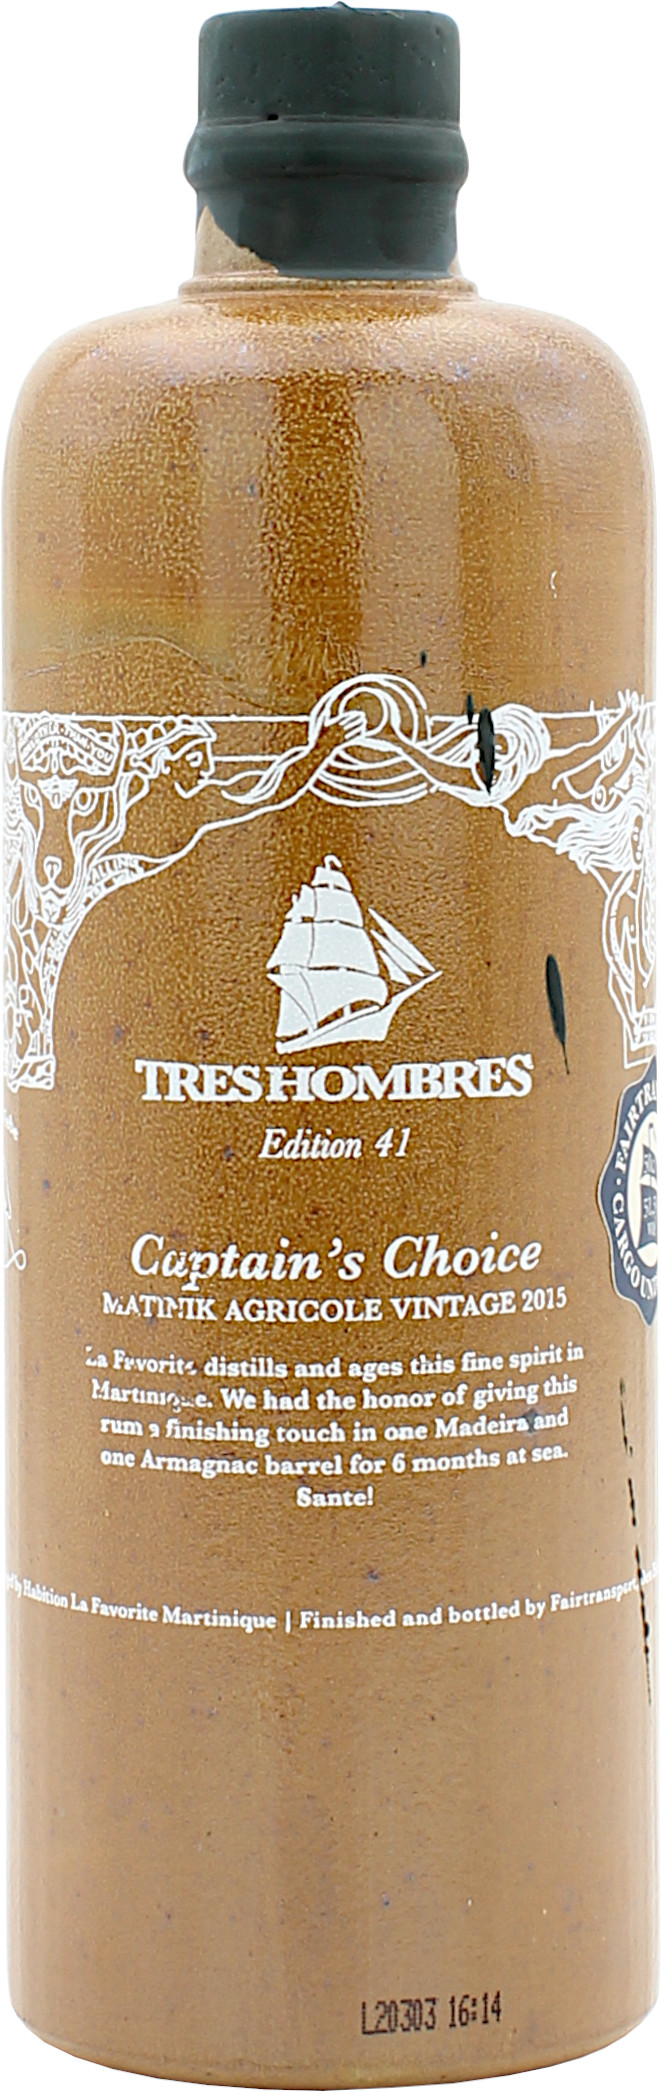 Tres Hombres Ed. 41 Matinik Agrigole Vintage 2015 Captains Choice 51.5% 0,5l